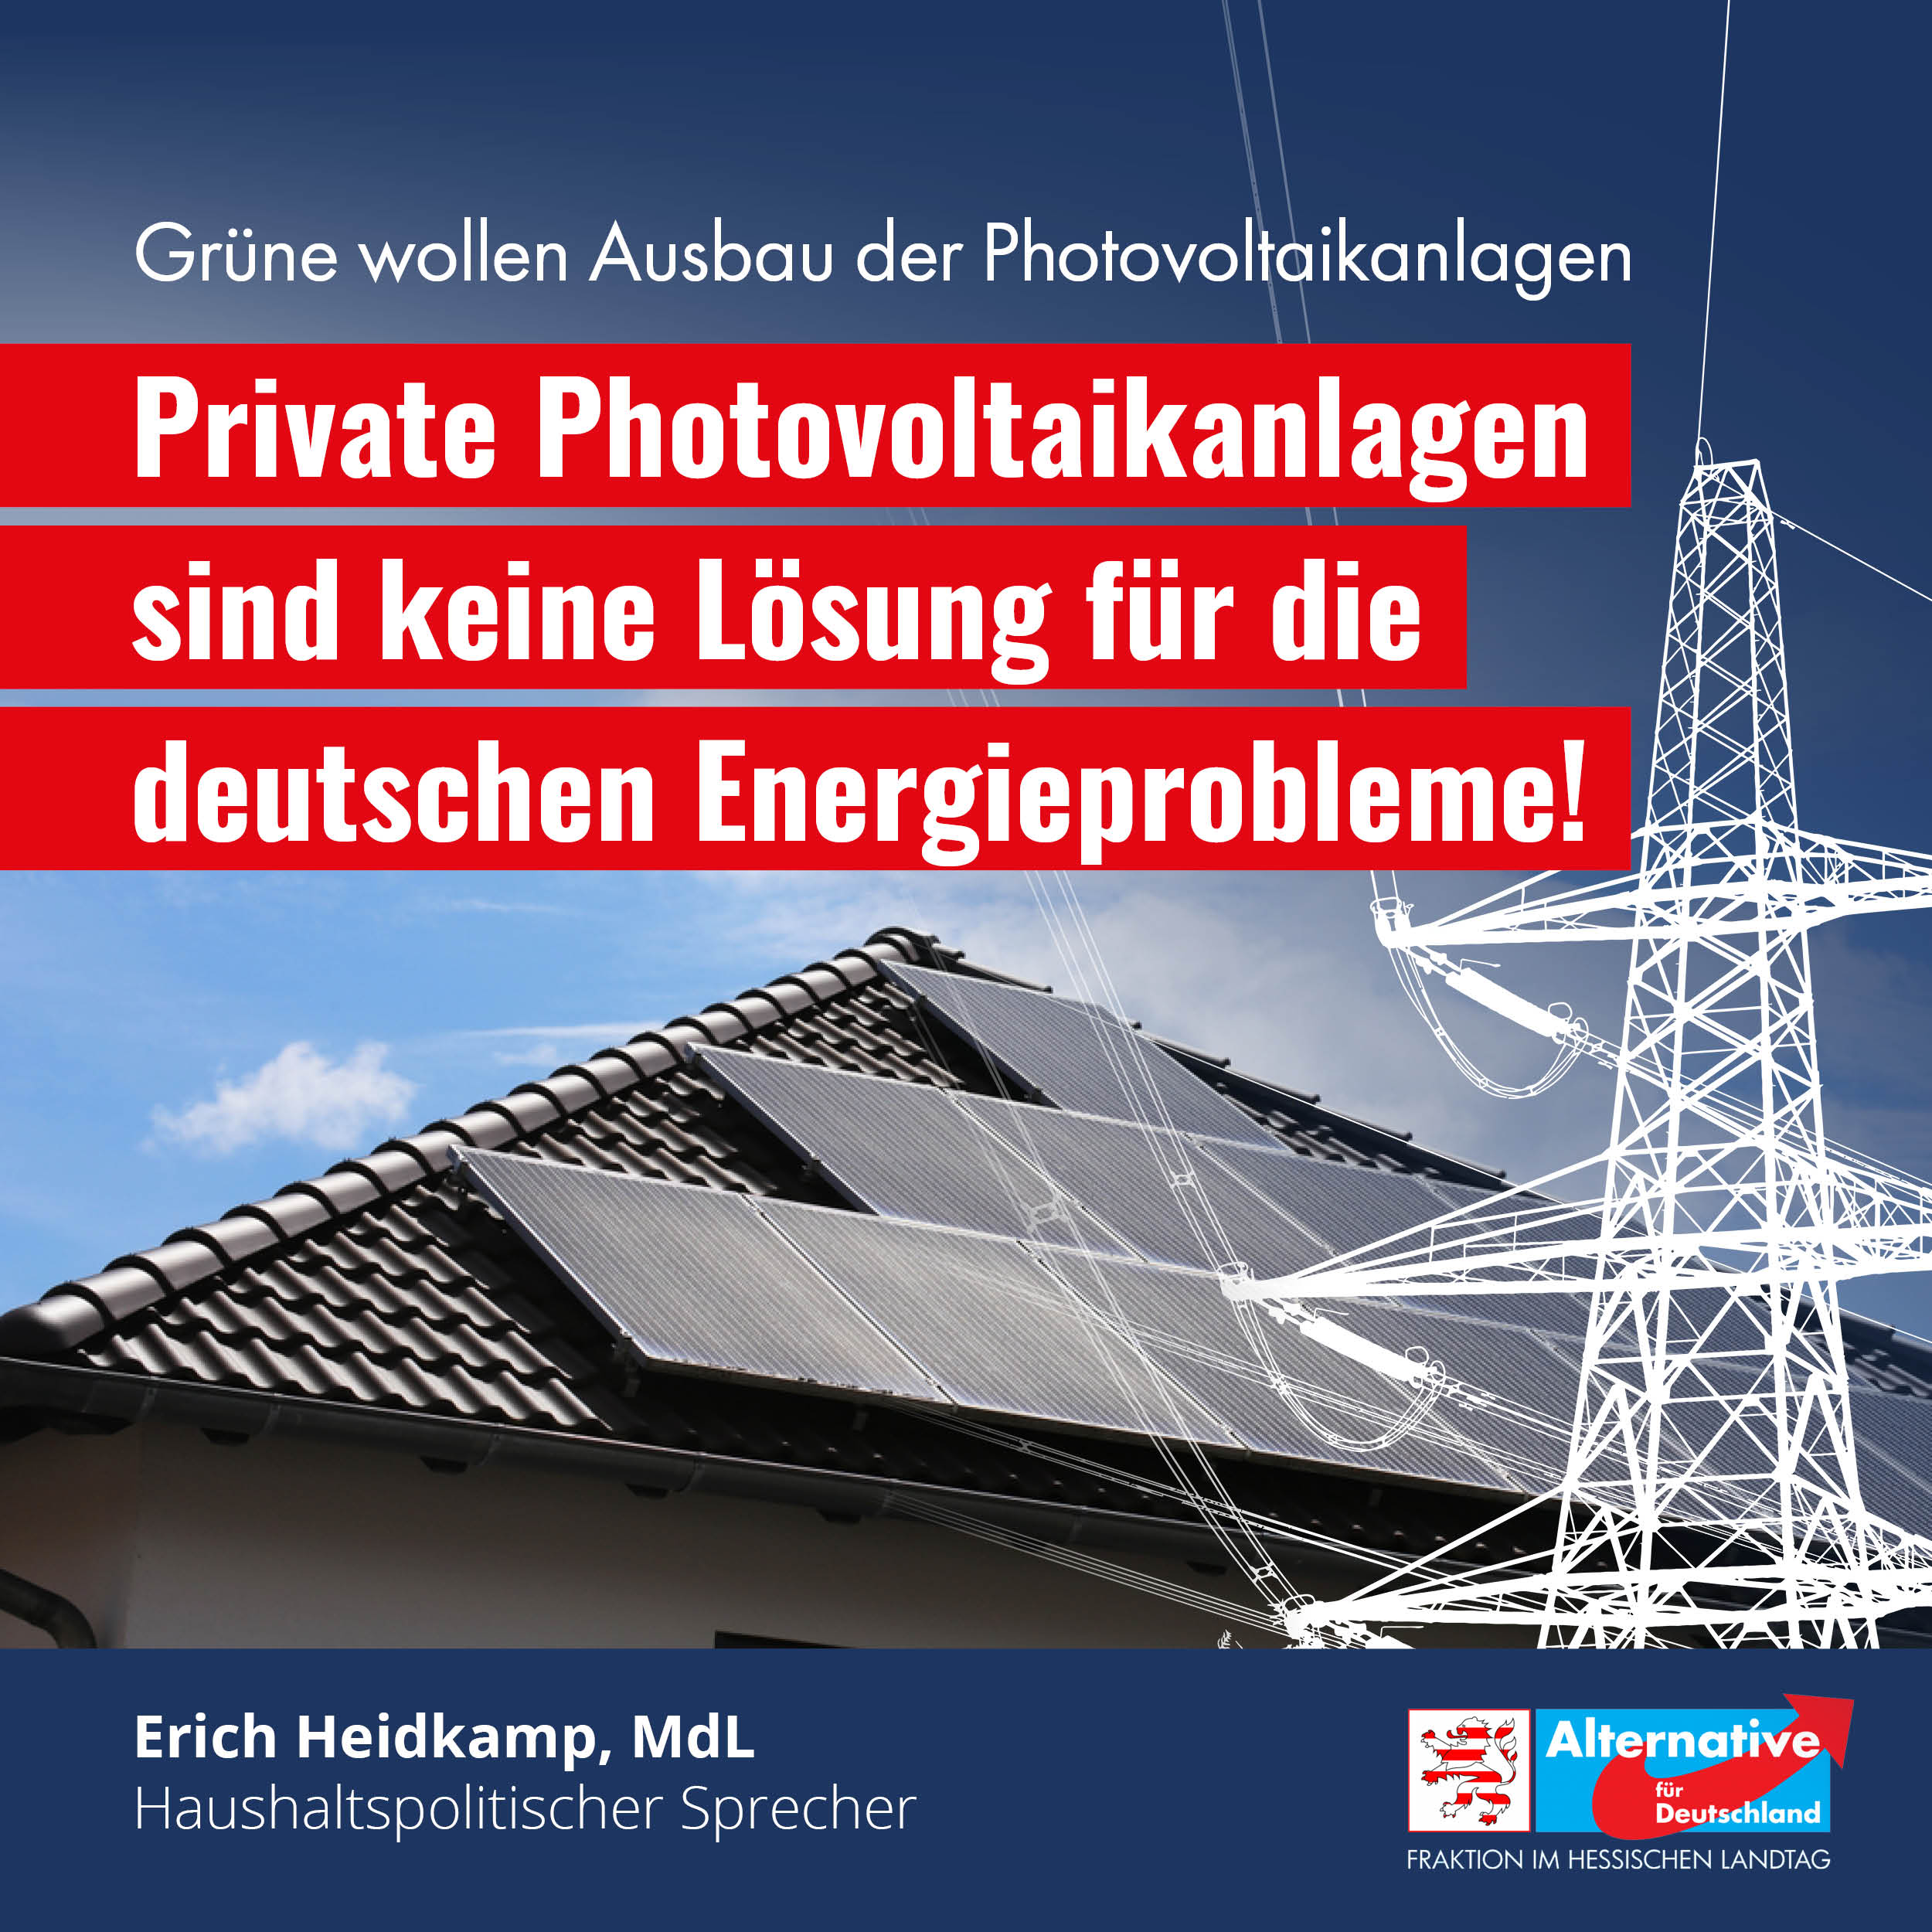 You are currently viewing Die Energieprobleme Deutschlands werden durch den weiteren Ausbau der privaten Photovoltaikanlagen nicht gelöst